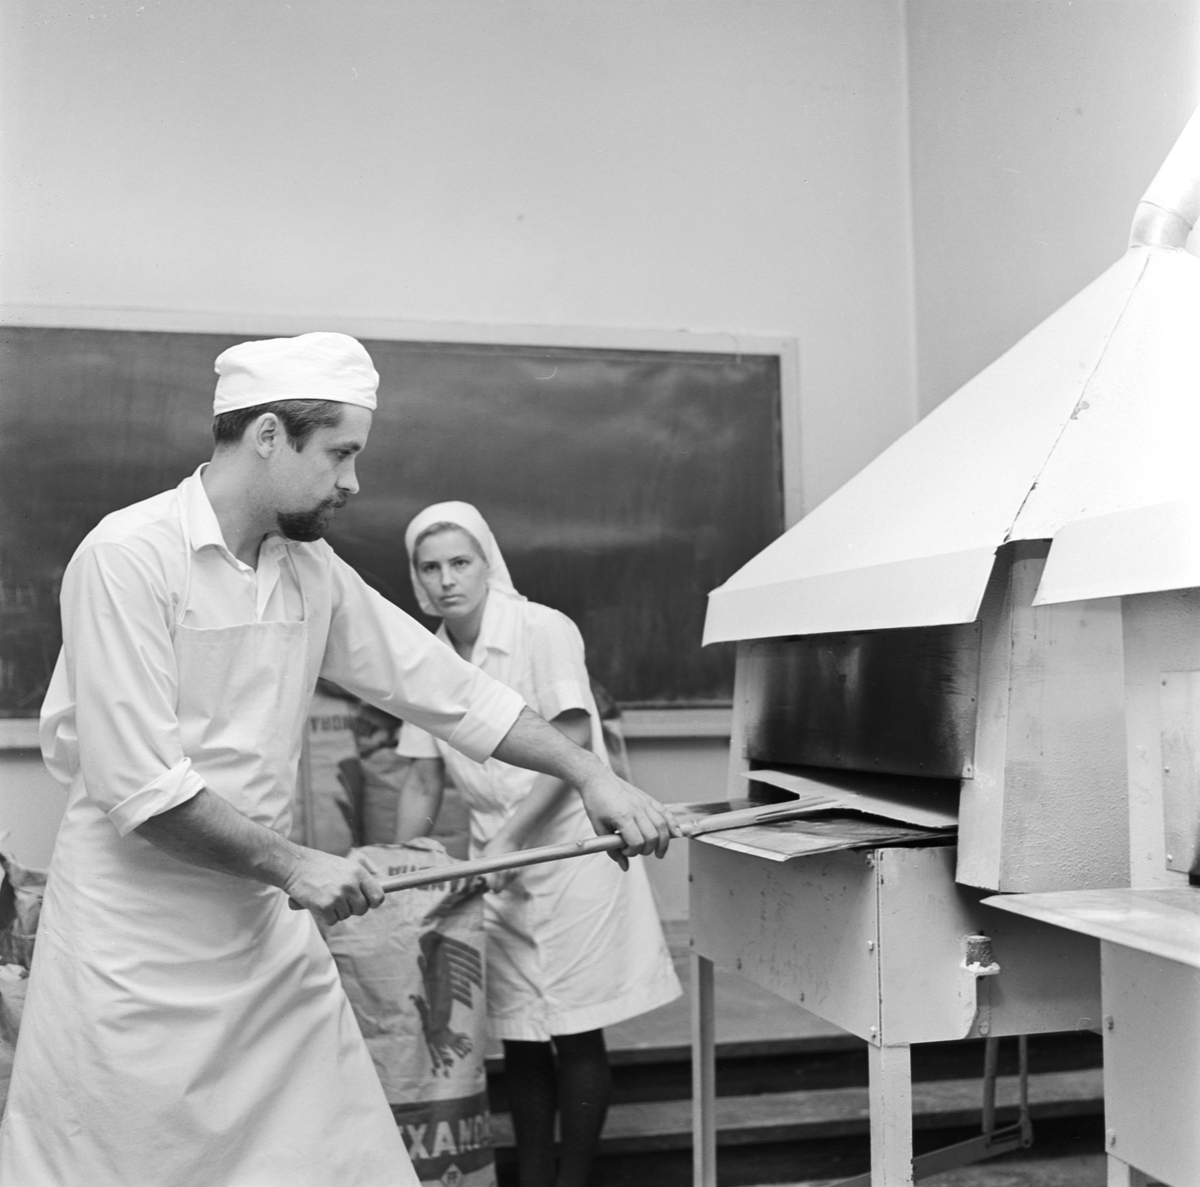 Brödbakning, Uppland 1968